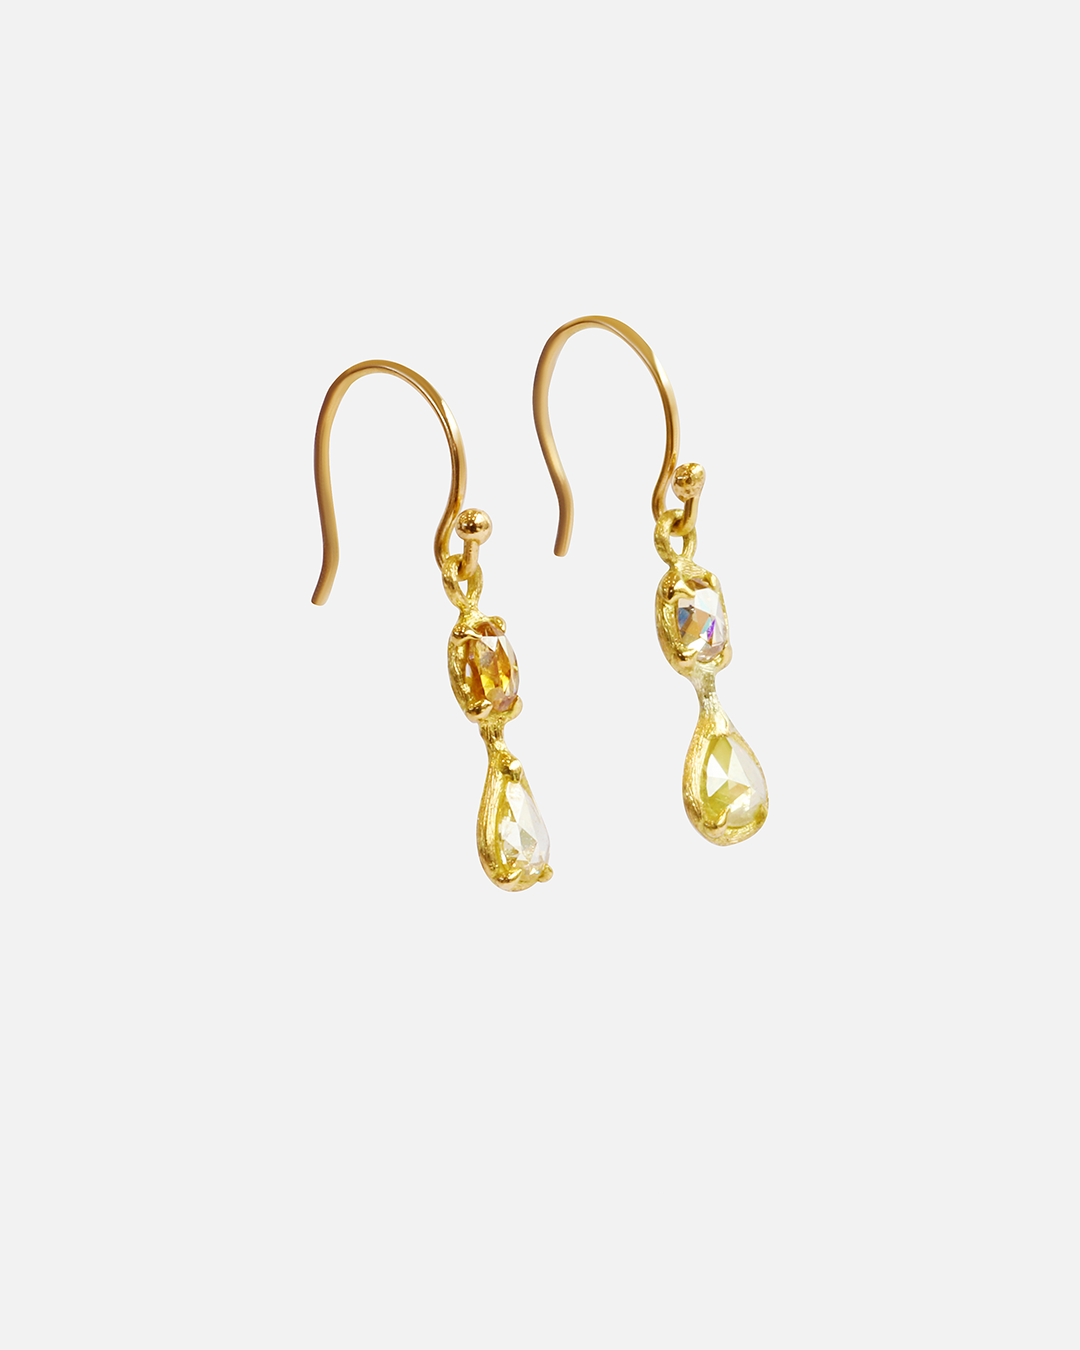 Silk / Long & Long Drop Earrings By Hiroyo in earrings Category